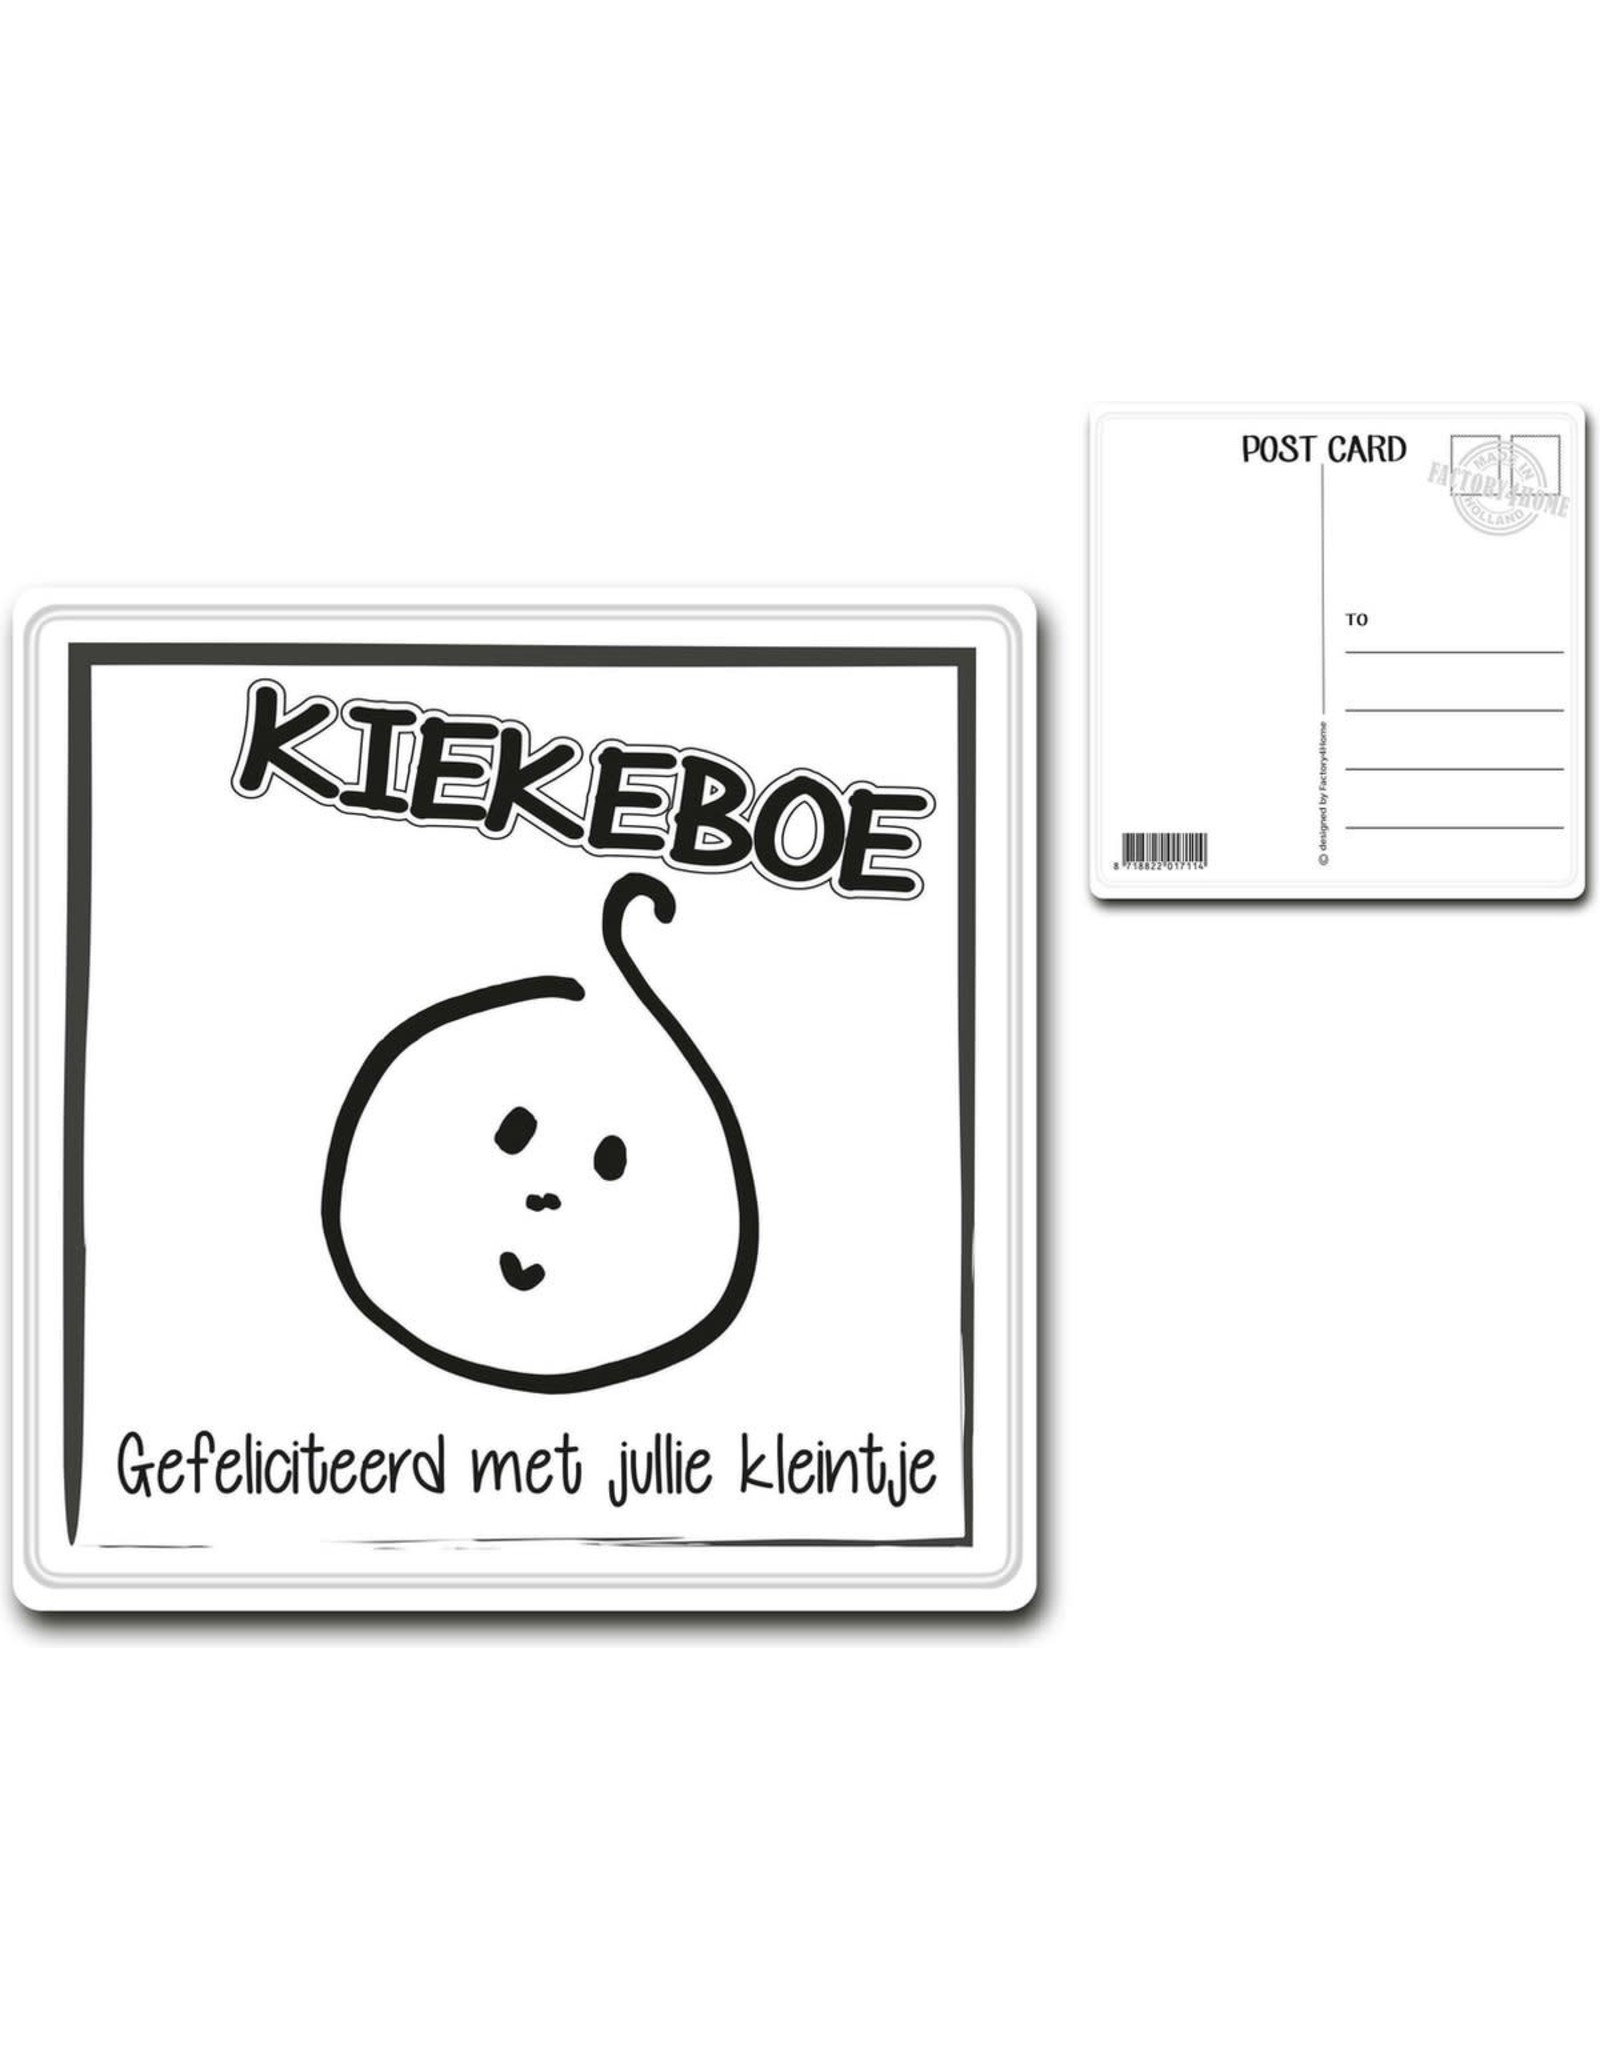 Postcard "KIEKEBOE"